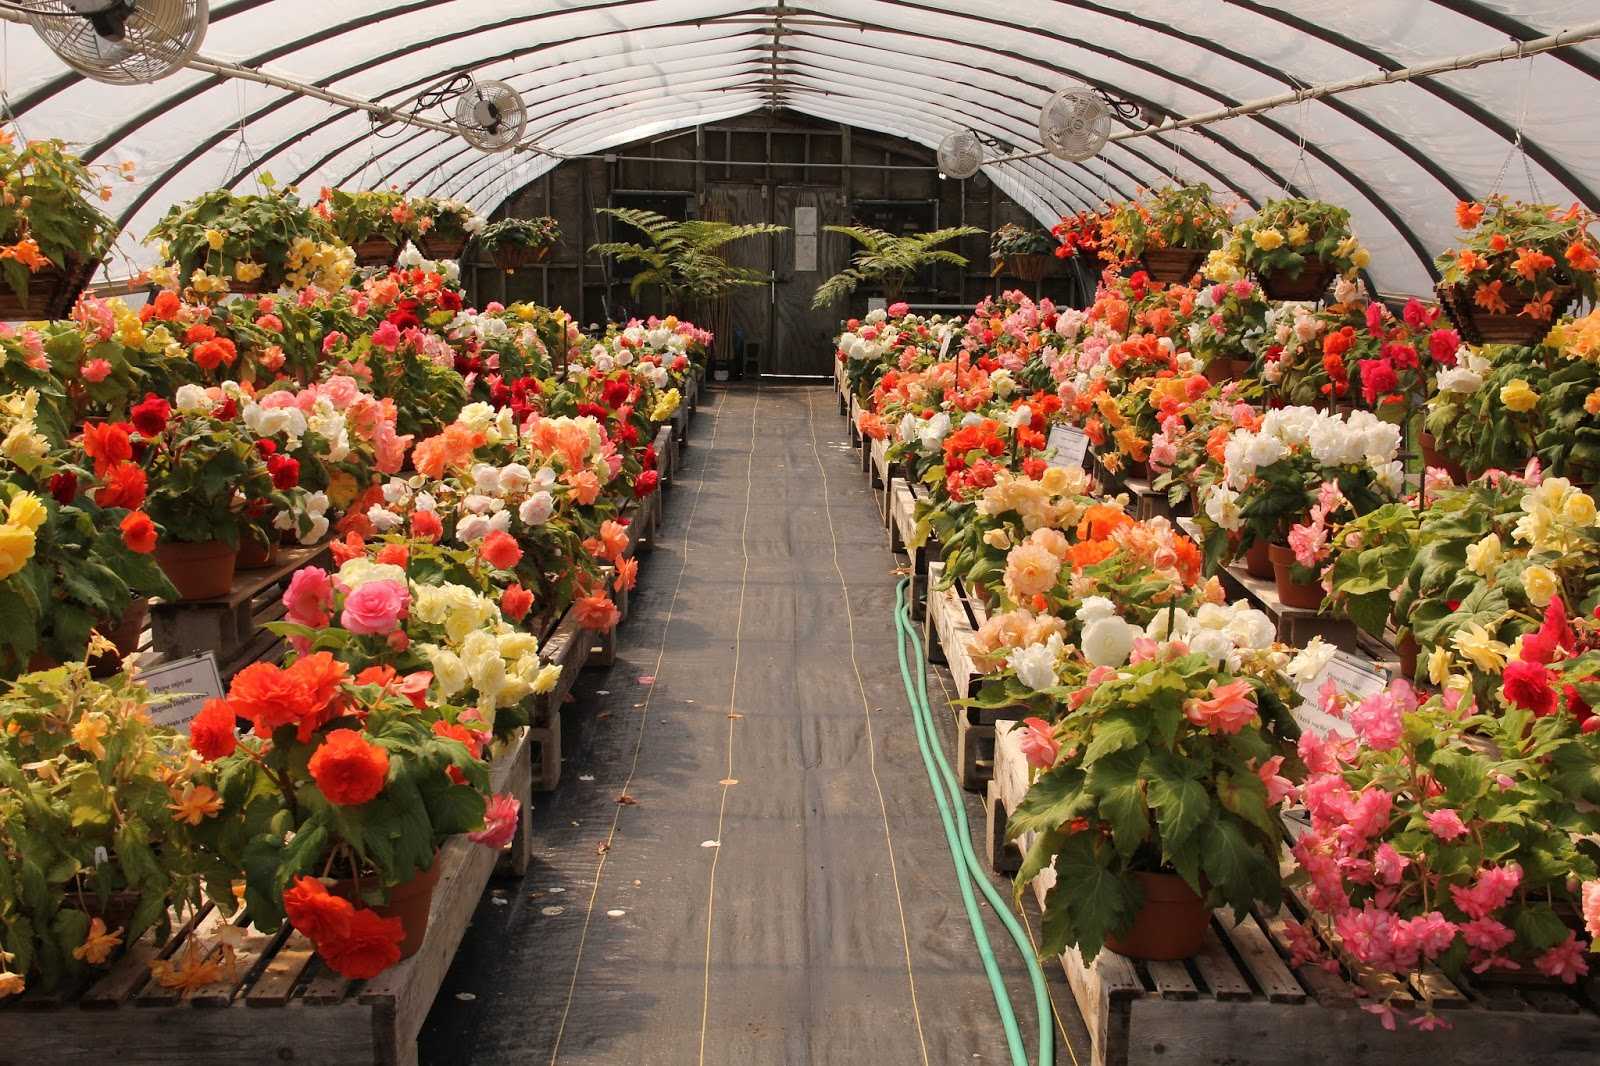 Выращивание цветов в теплице как бизнес | огородник